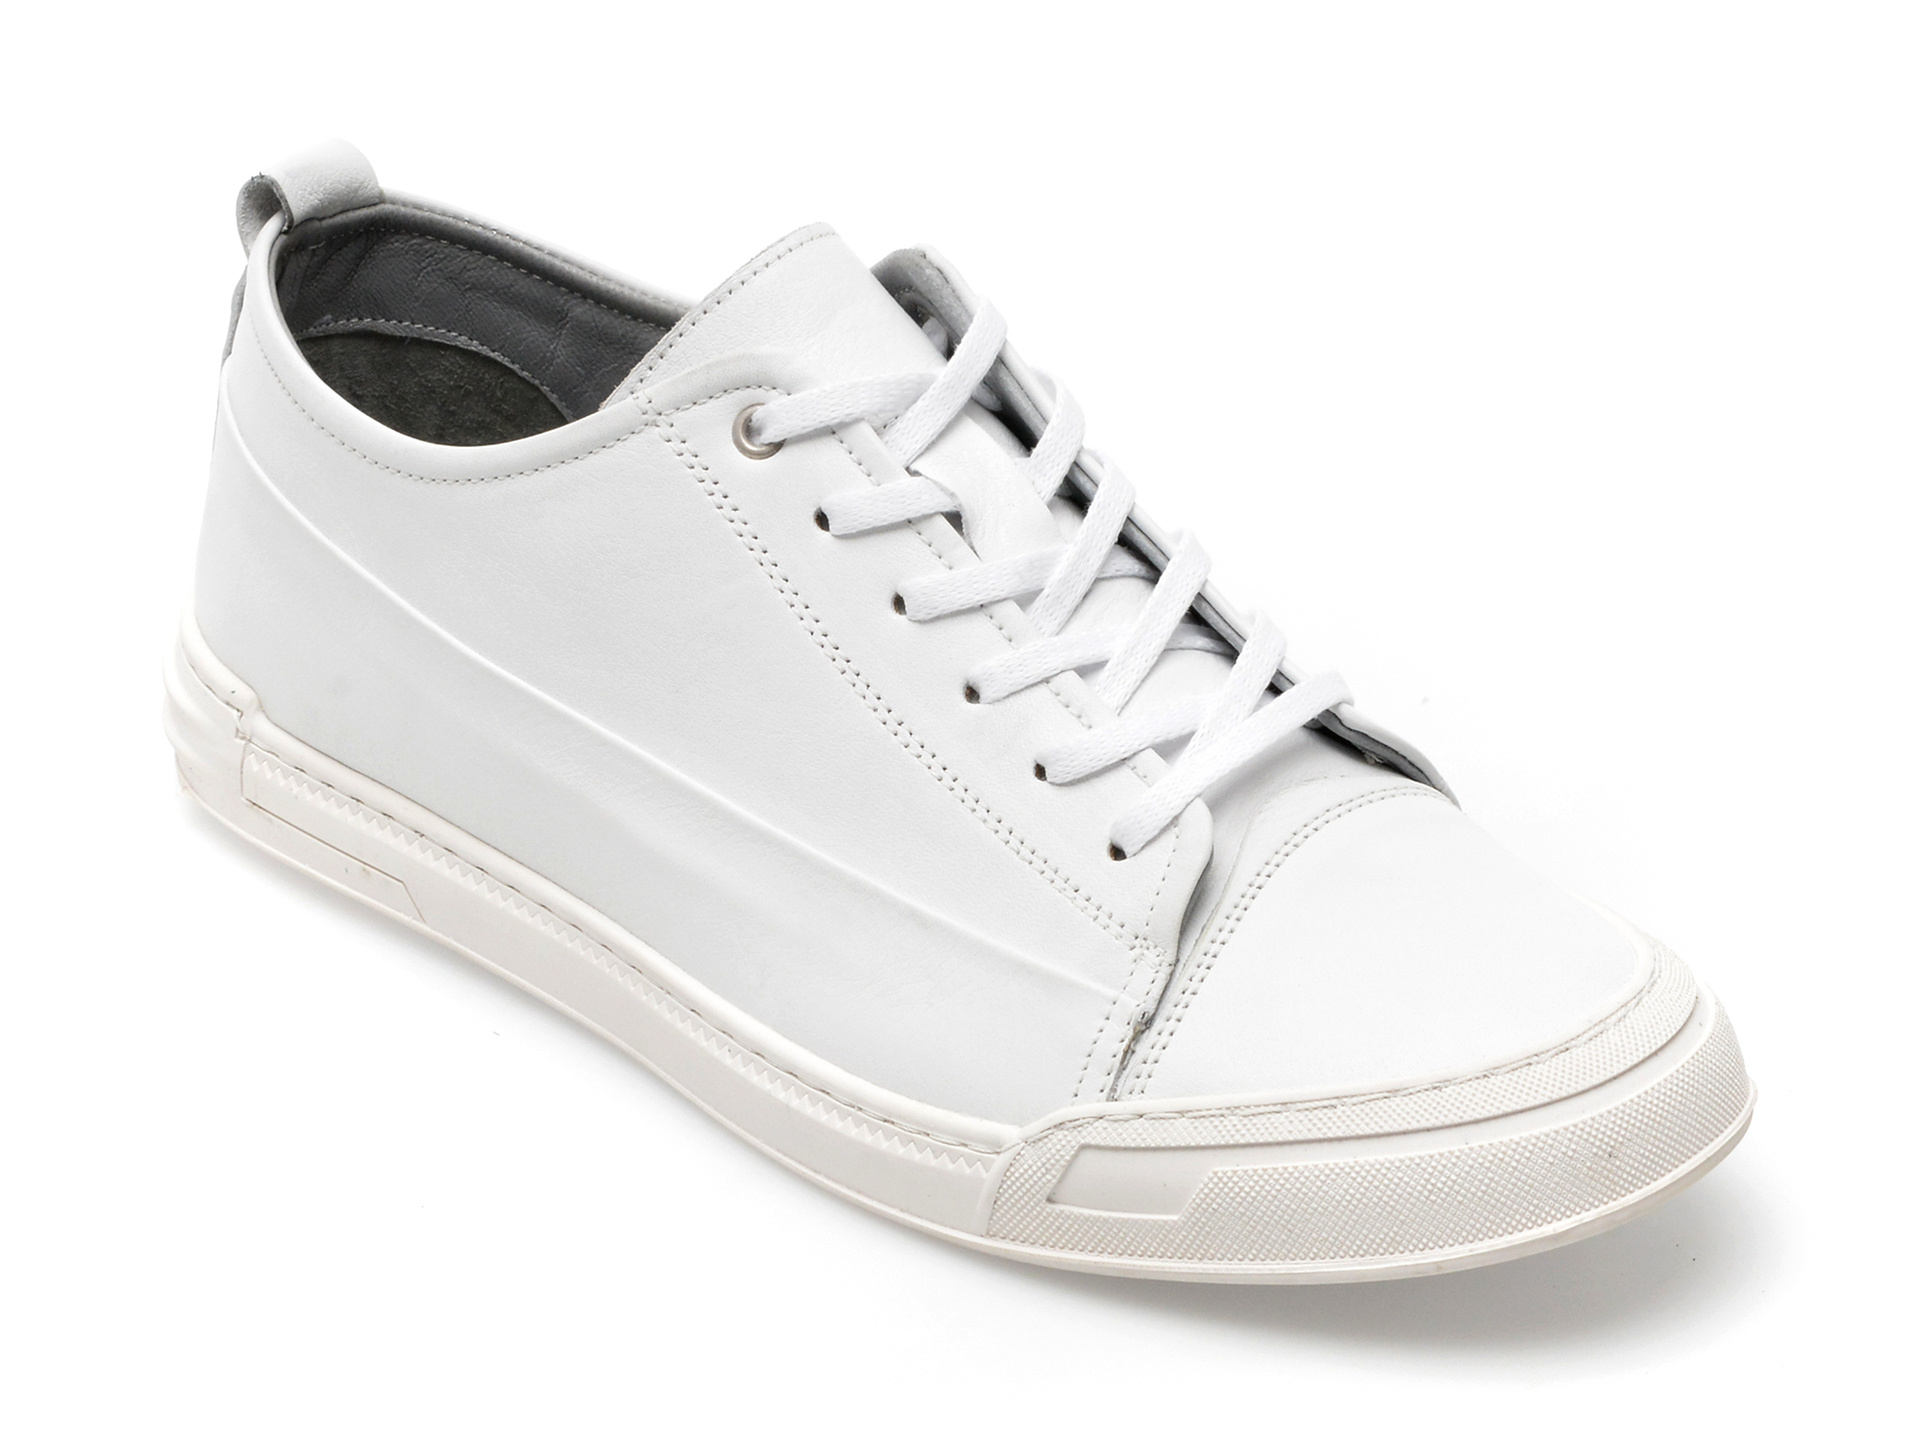 Pantofi GRYXX albi, 17602, din piele naturala